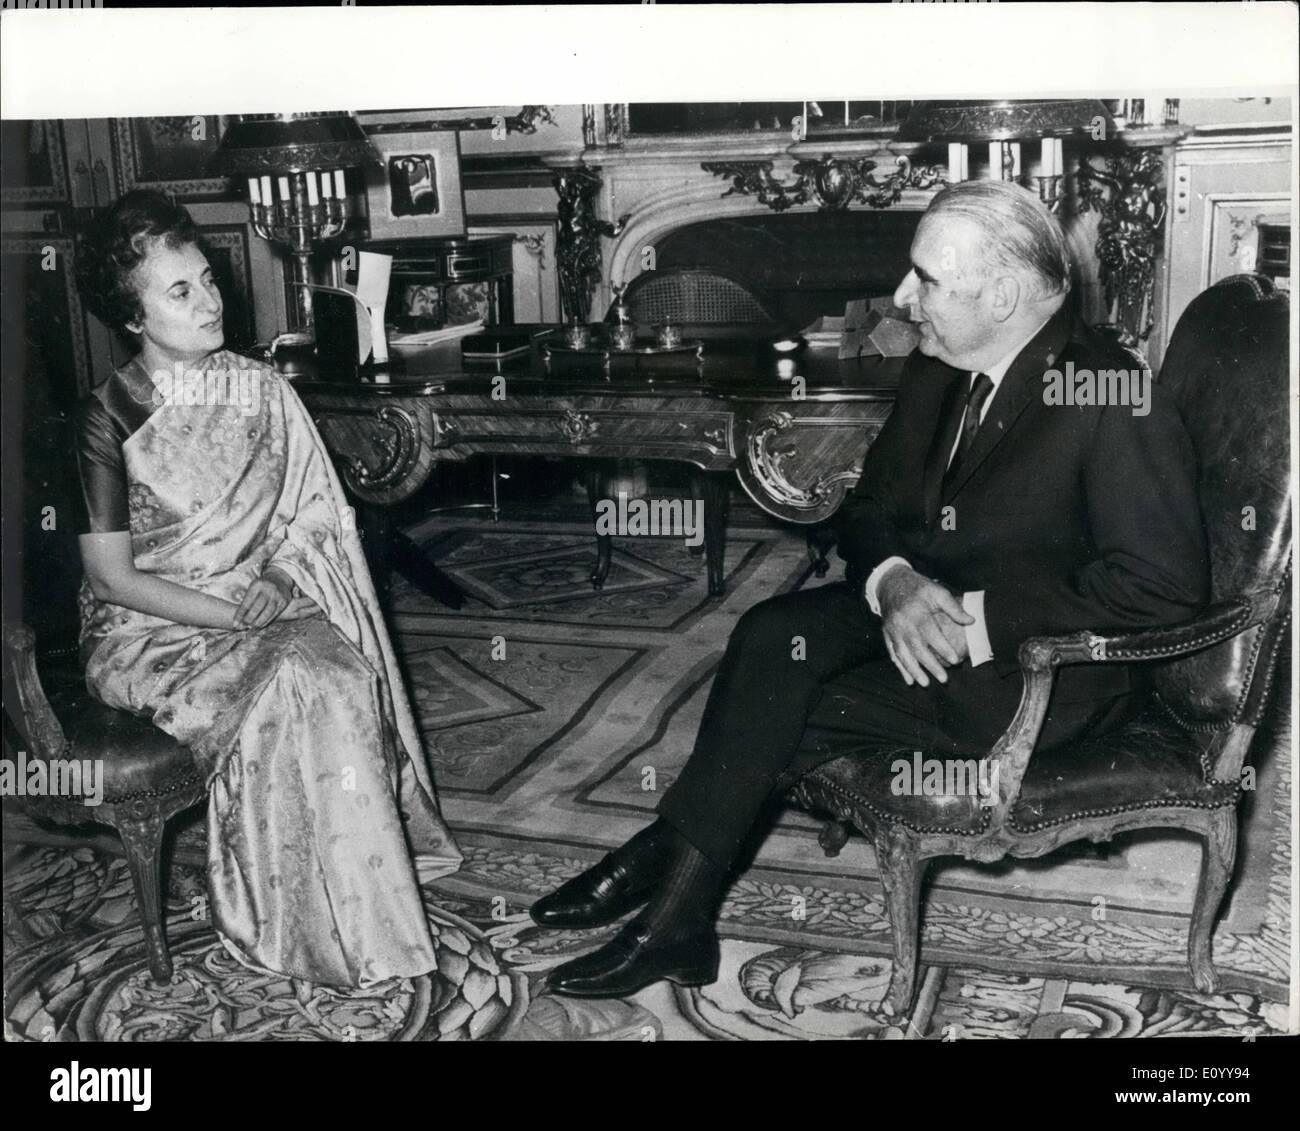 11 novembre 1971 - Mme Gandhi rencontre le président Pompidou. Mme Indira Gandhi, le Premier Ministre de l'Inde, qui est en visite officielle à Paris vu avec M. Pompidou, lorsqu'ils se sont réunis à l'Elysée. Banque D'Images